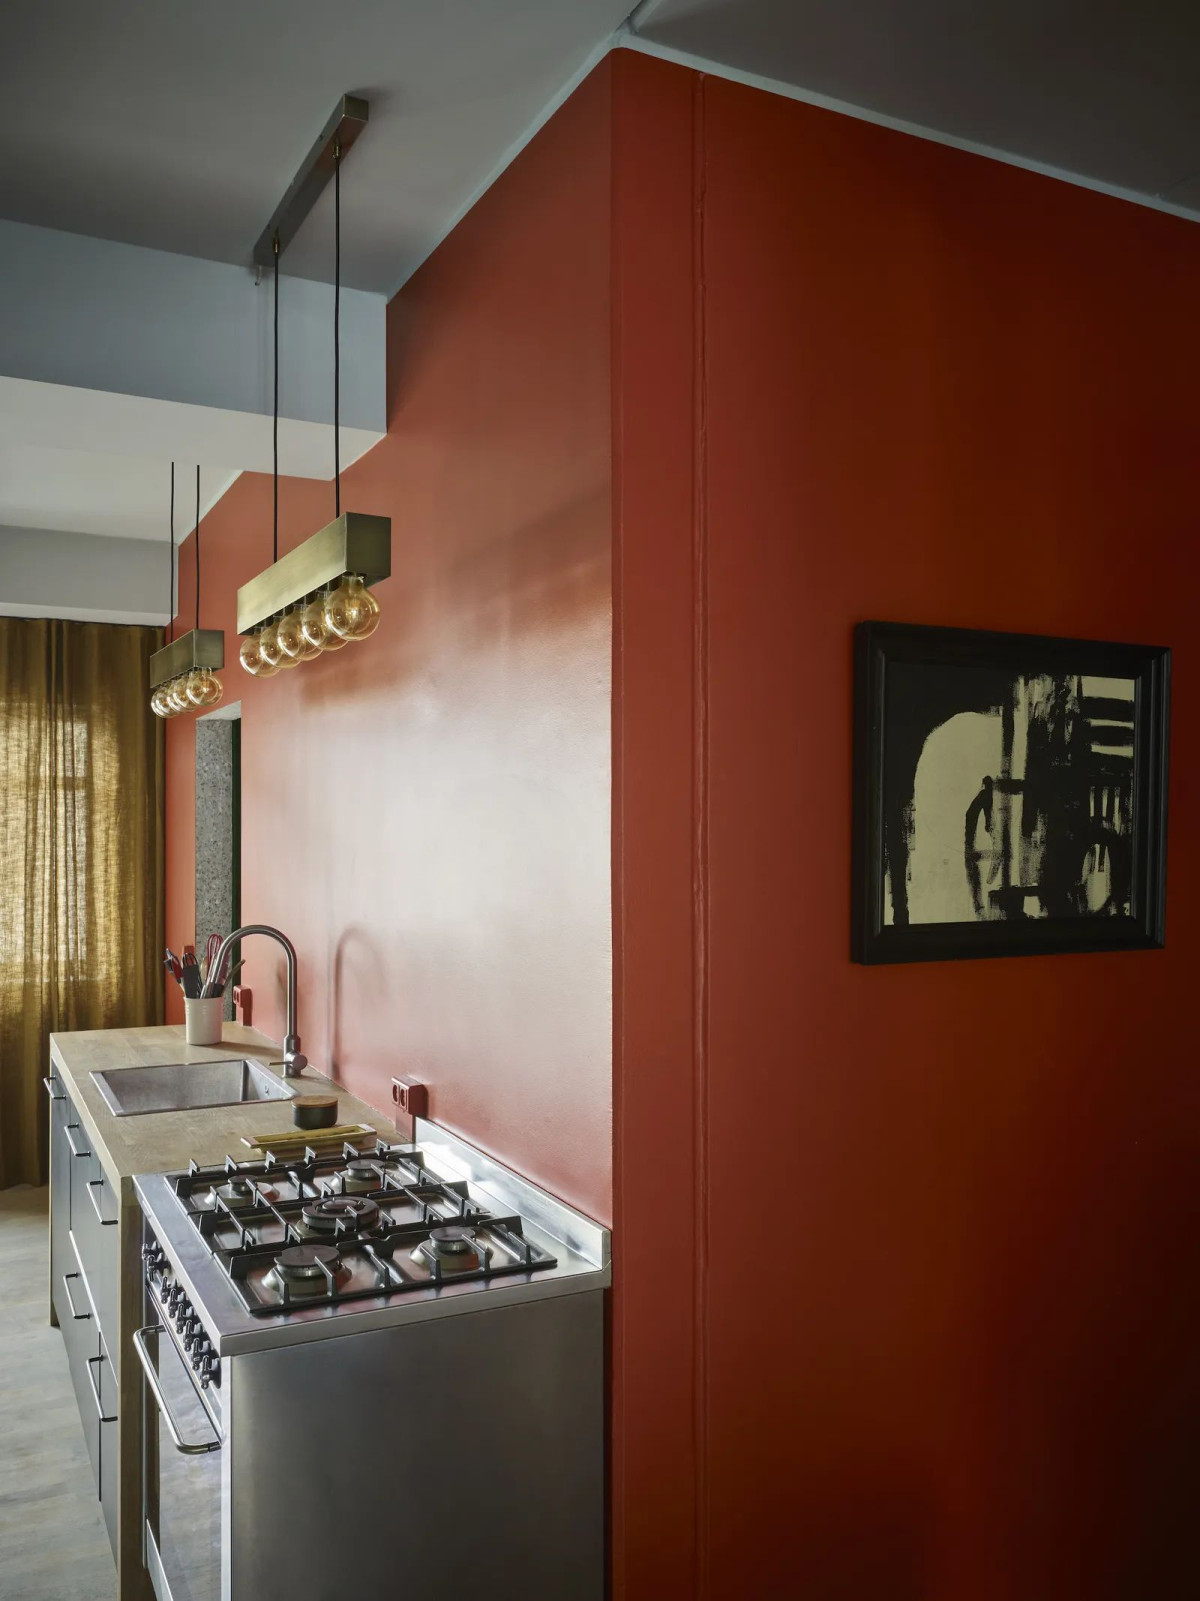 Sarkana krāsa uz sienas ar virtuvi